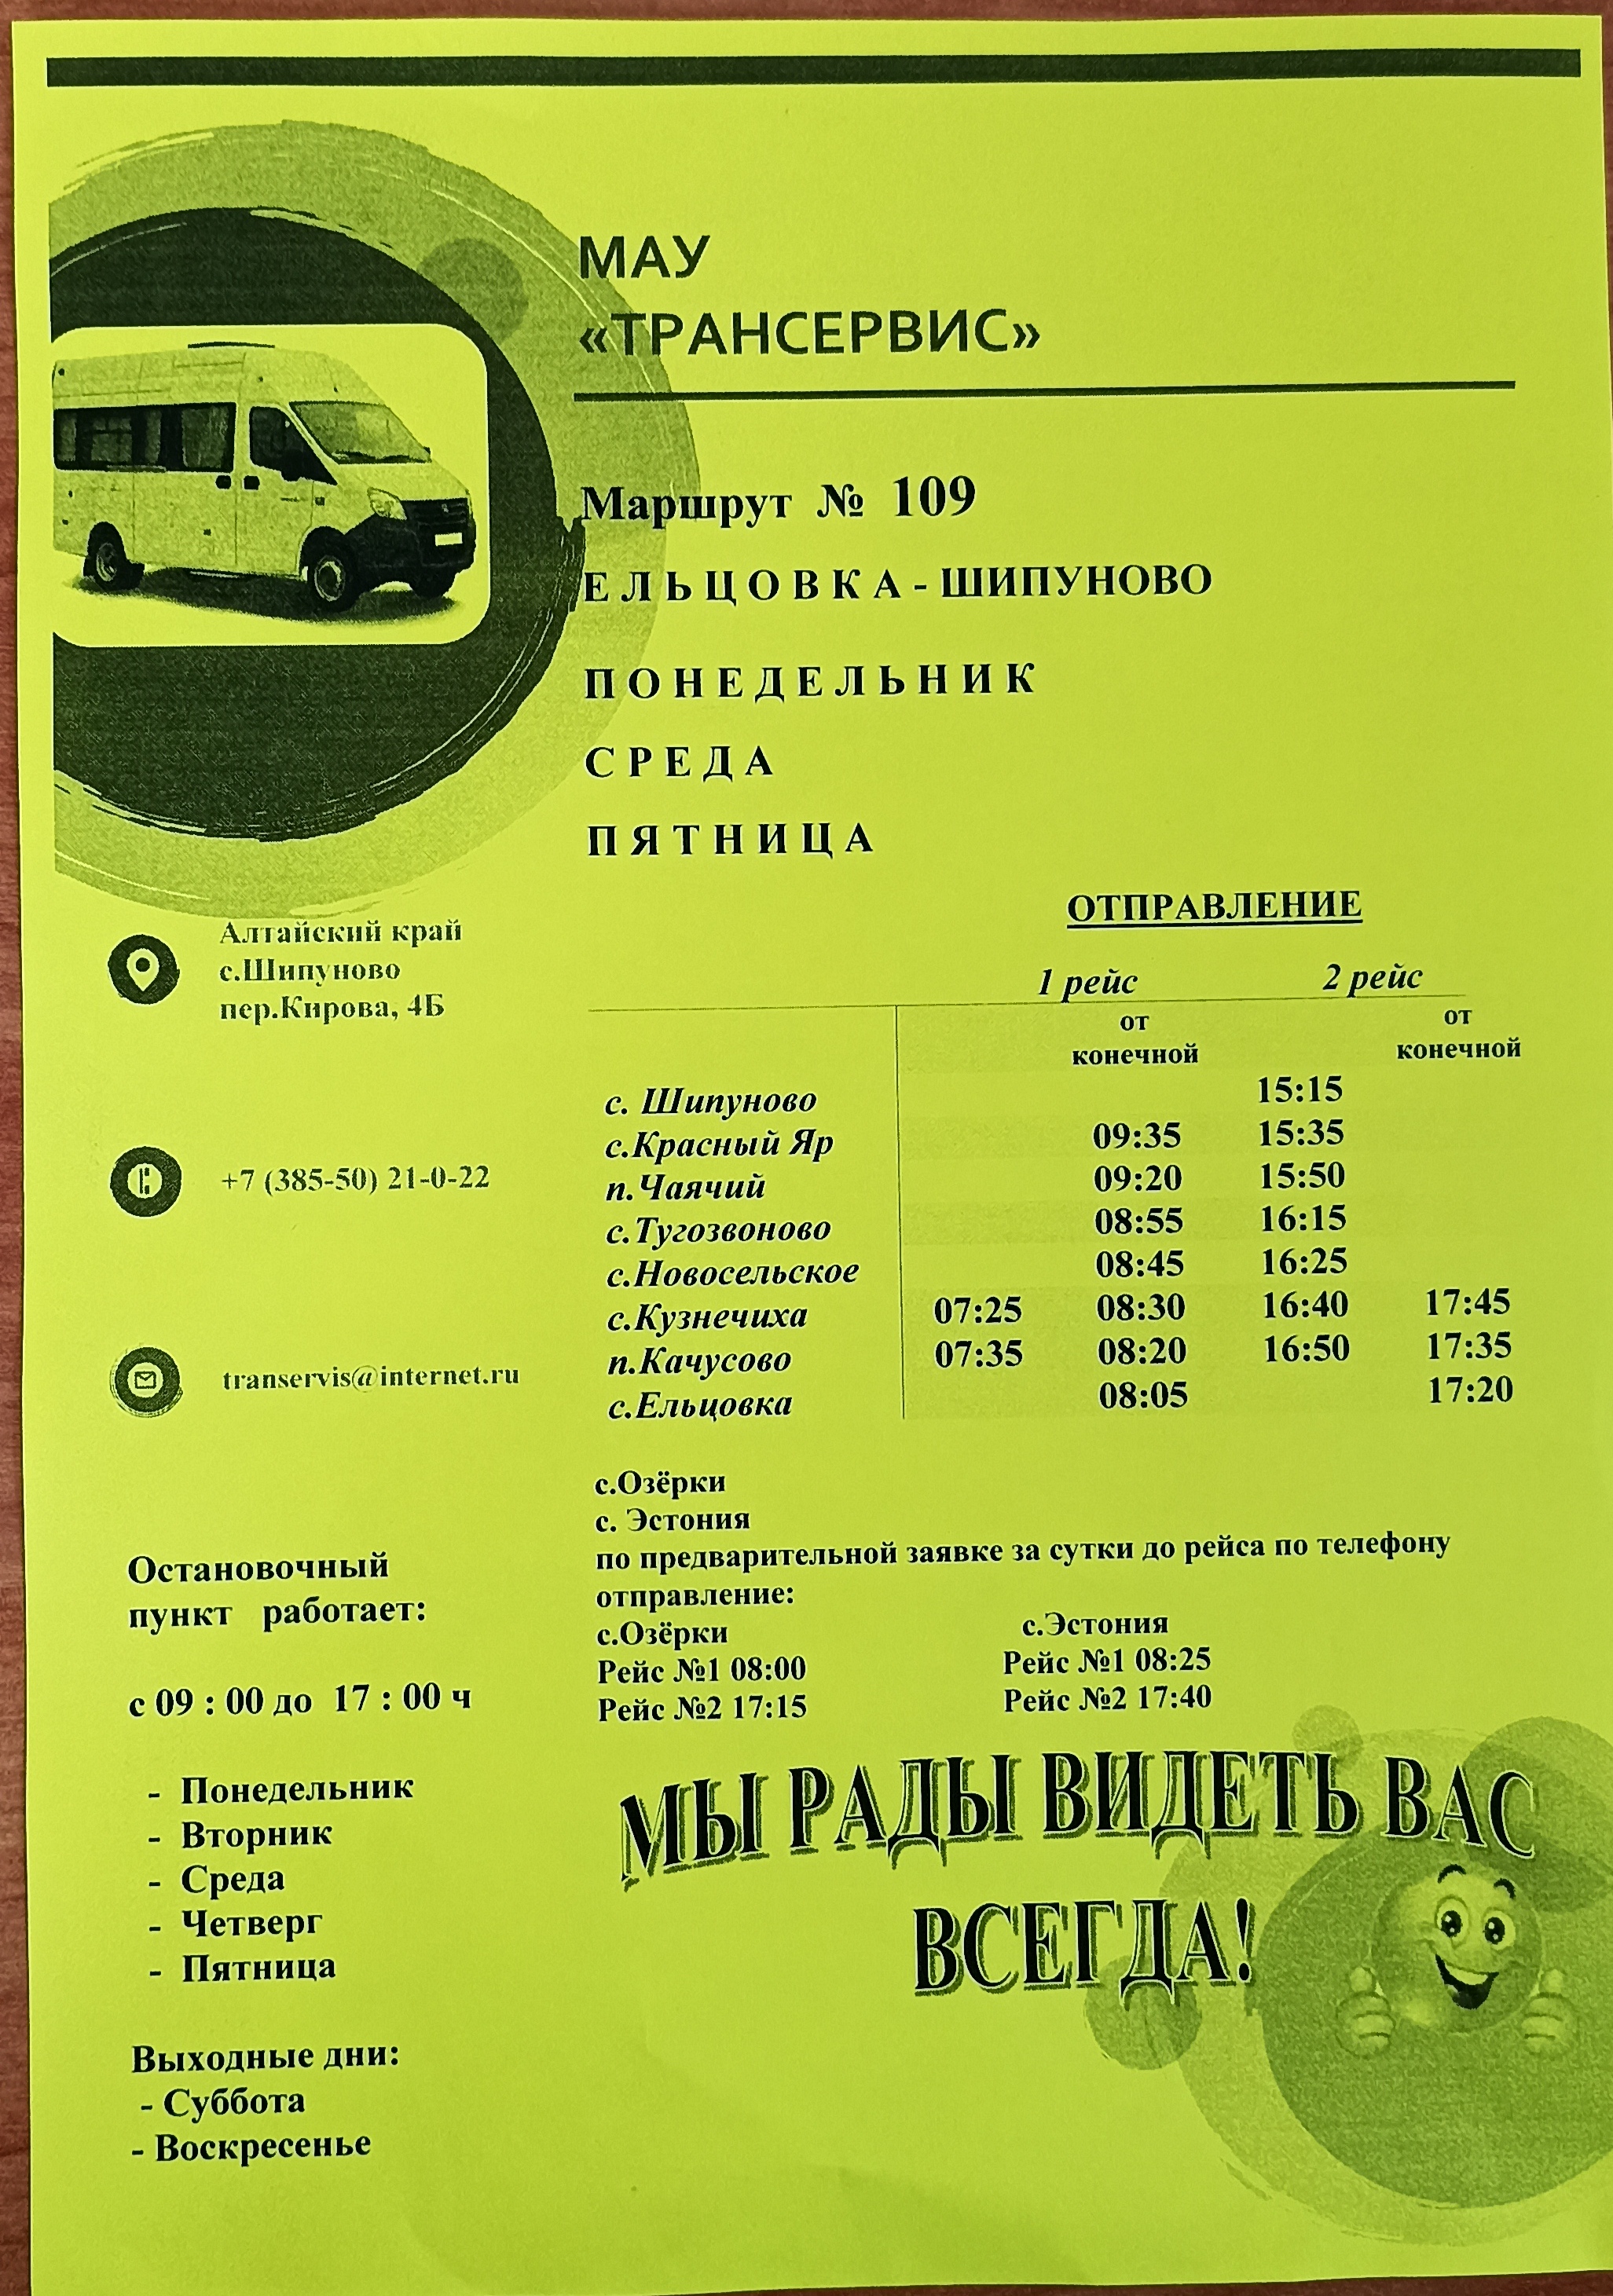 Расписание автобуса Маршрут № 109 Ельцовка-Шипуново.